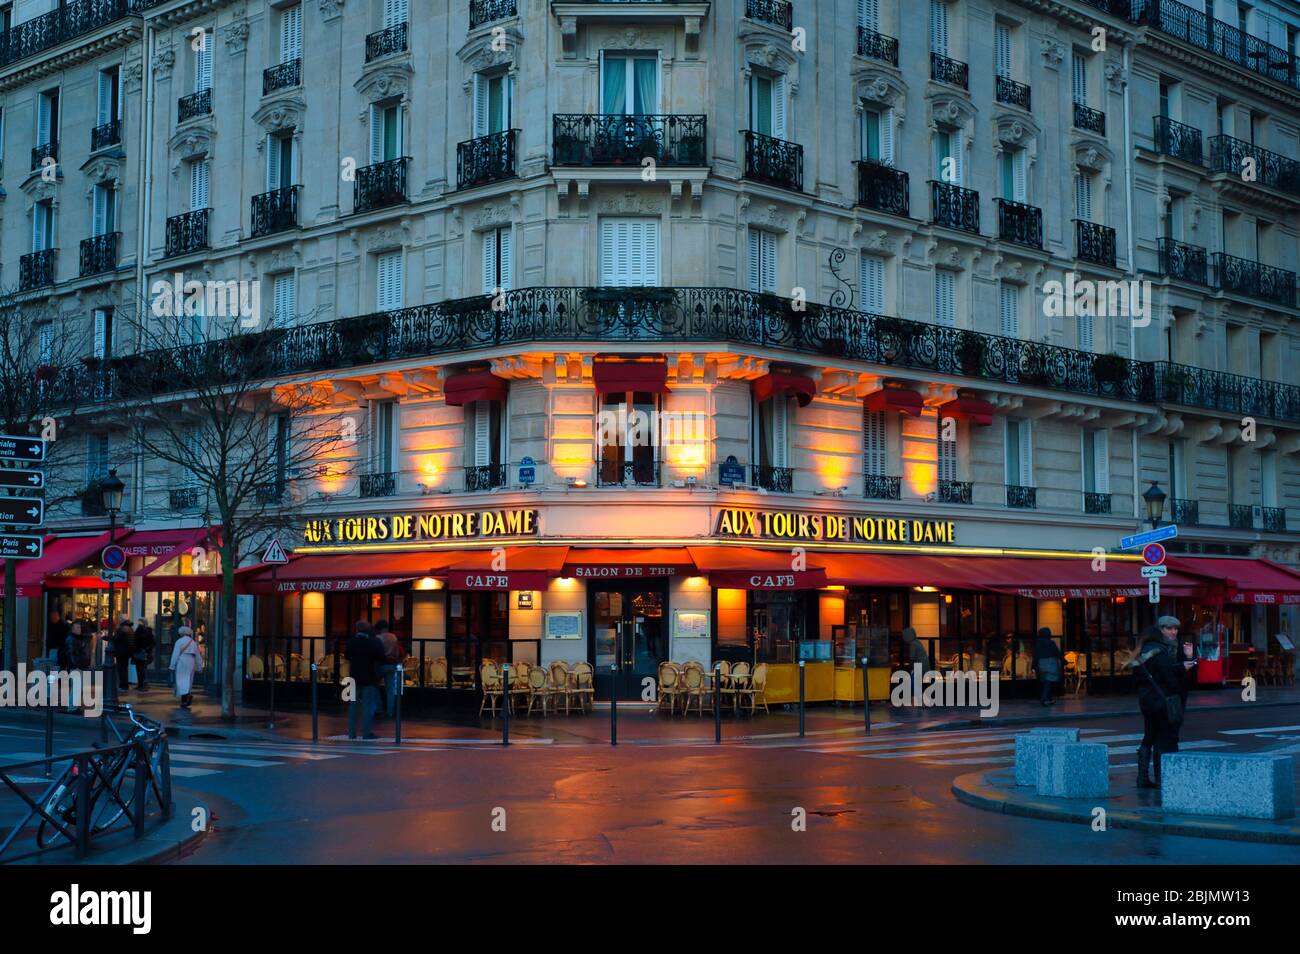 Aux Tours de Notre Dame Cafe, Paris, France Stock Photo - Alamy